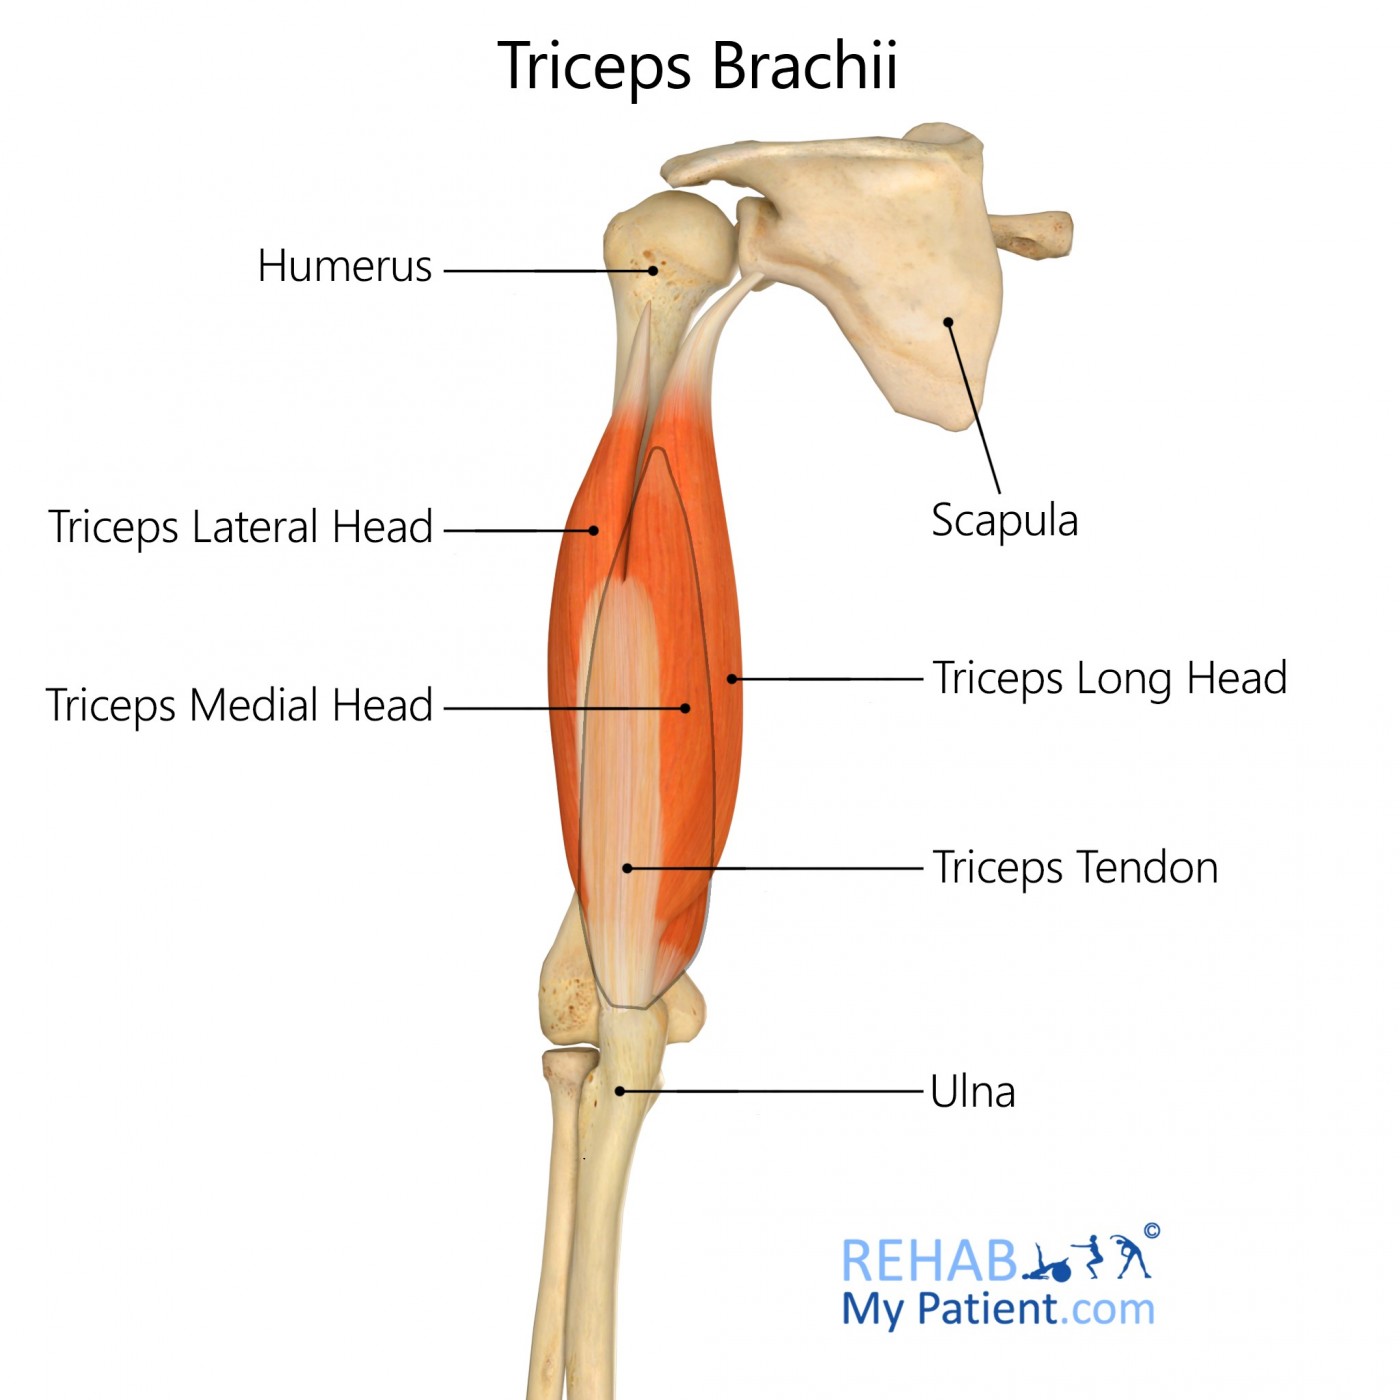 Triceps Brachii